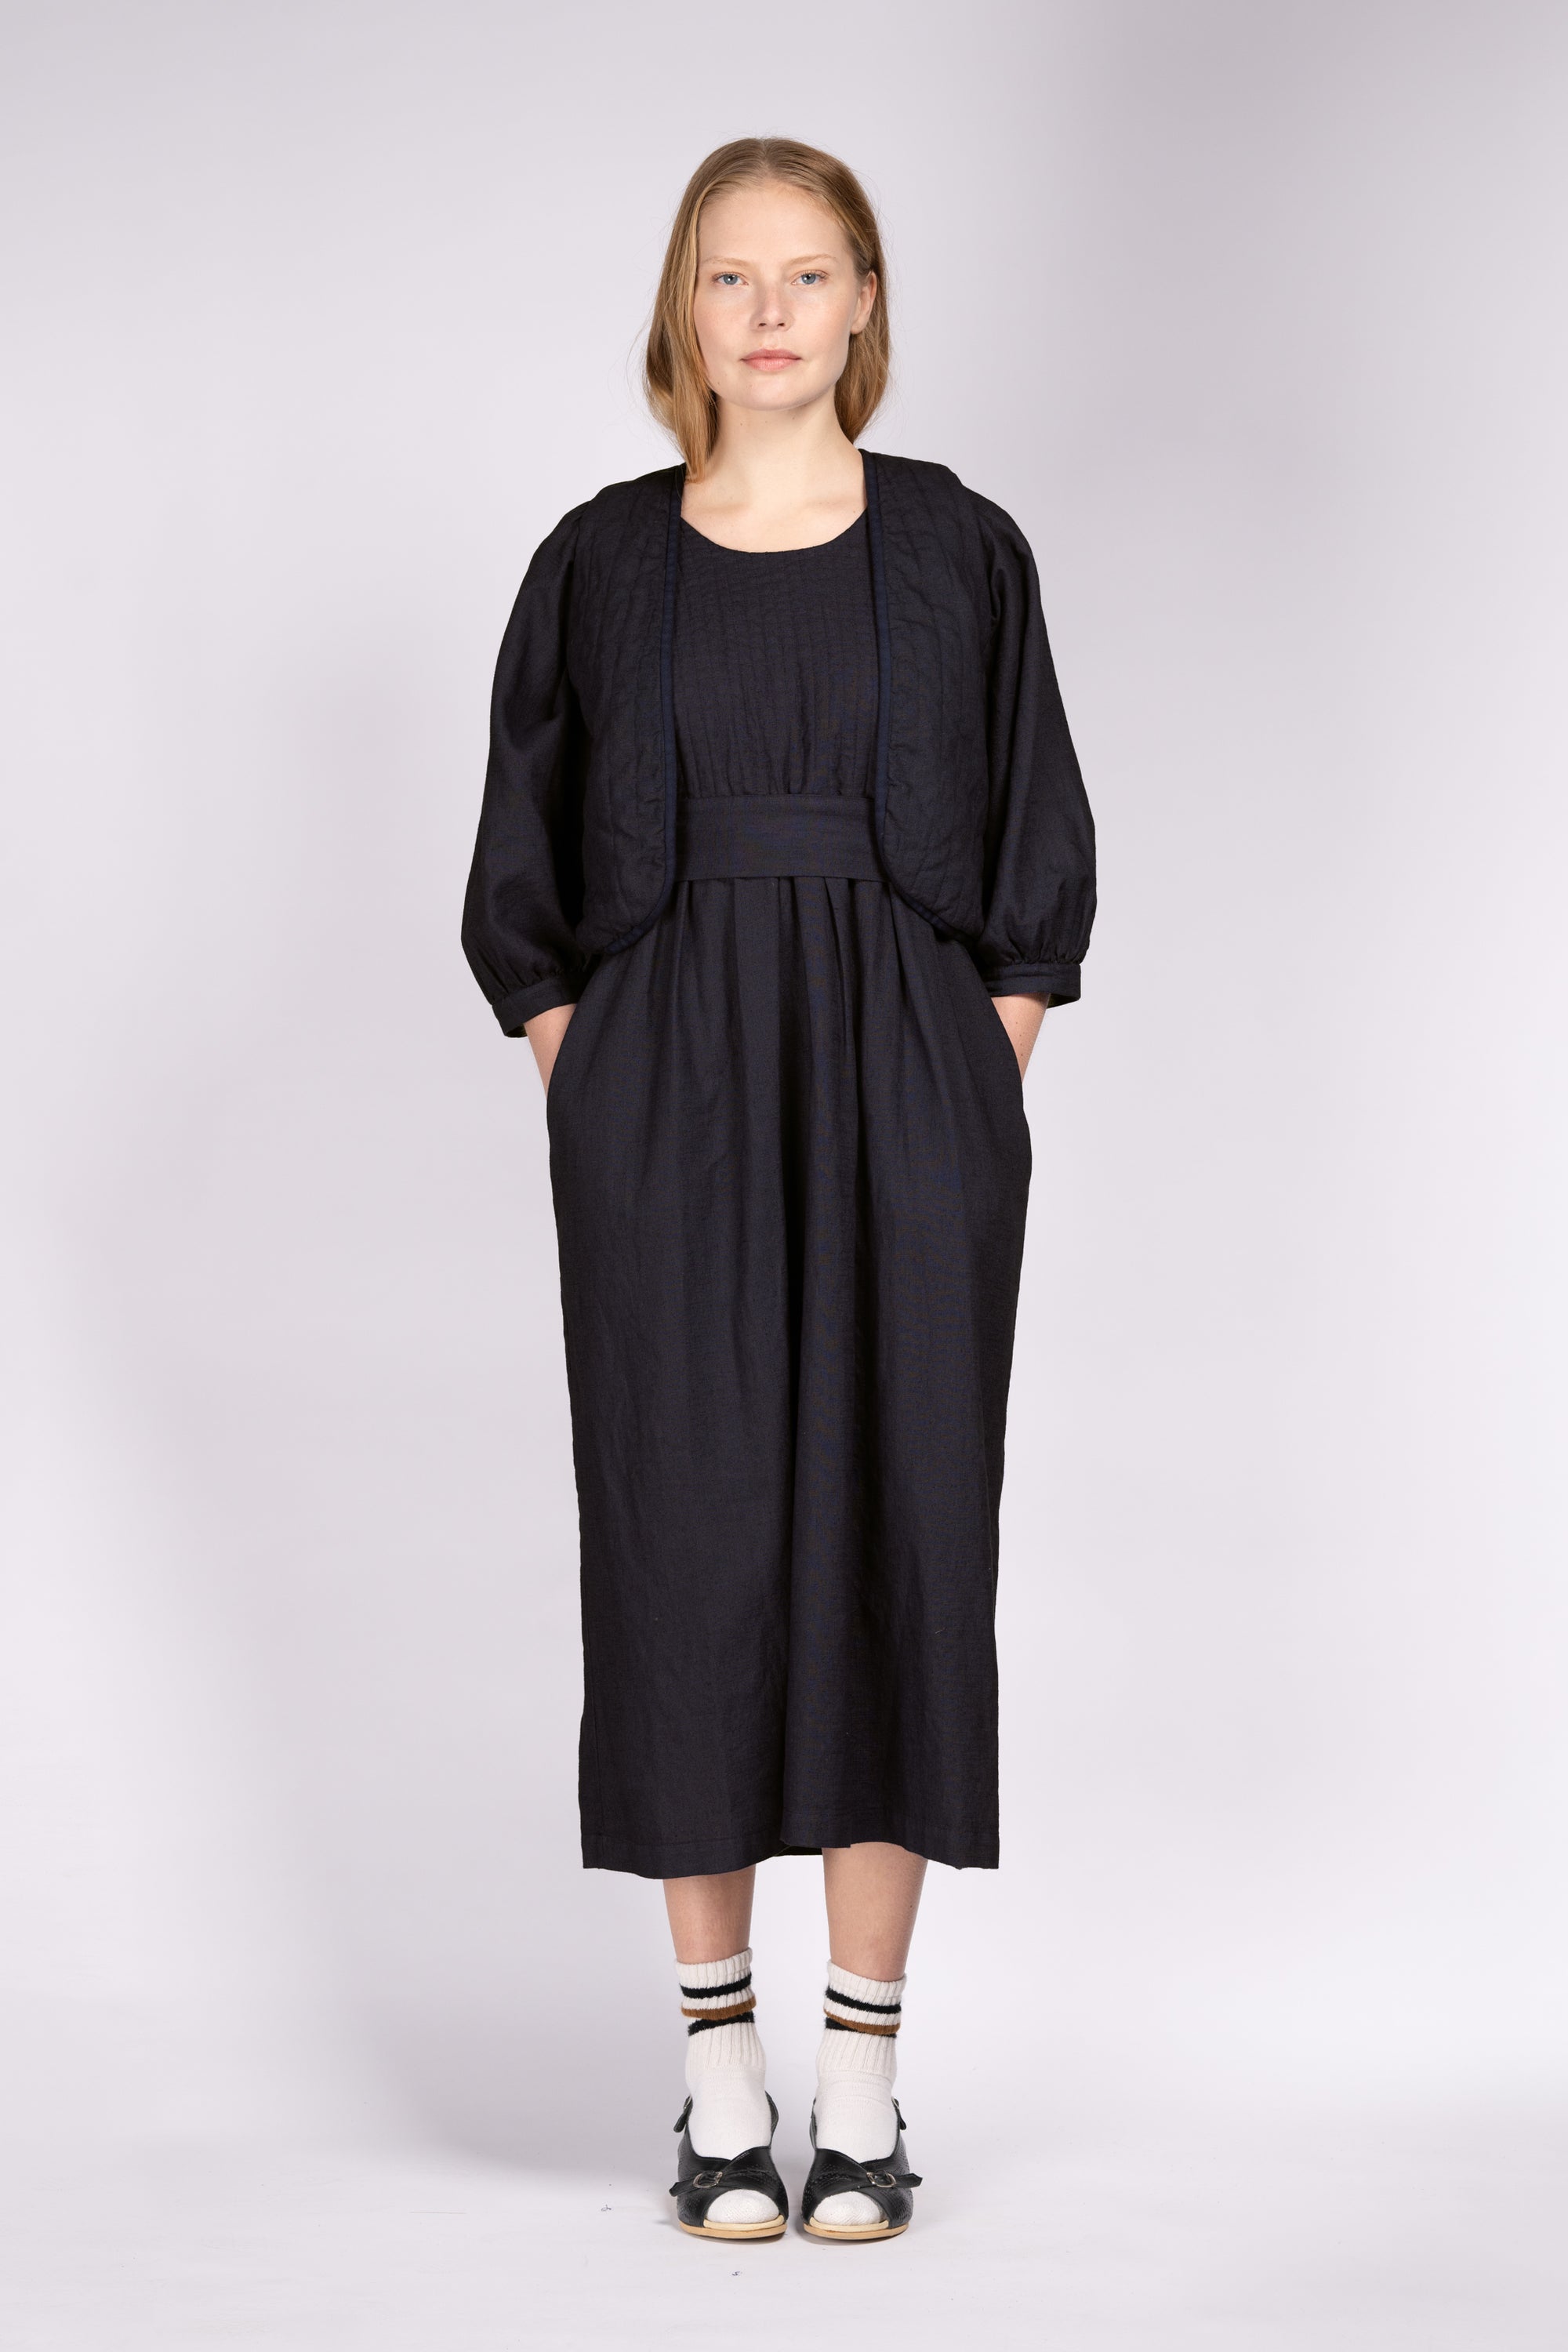 'Woodstock' Quilt Waistcoat - Black Linen